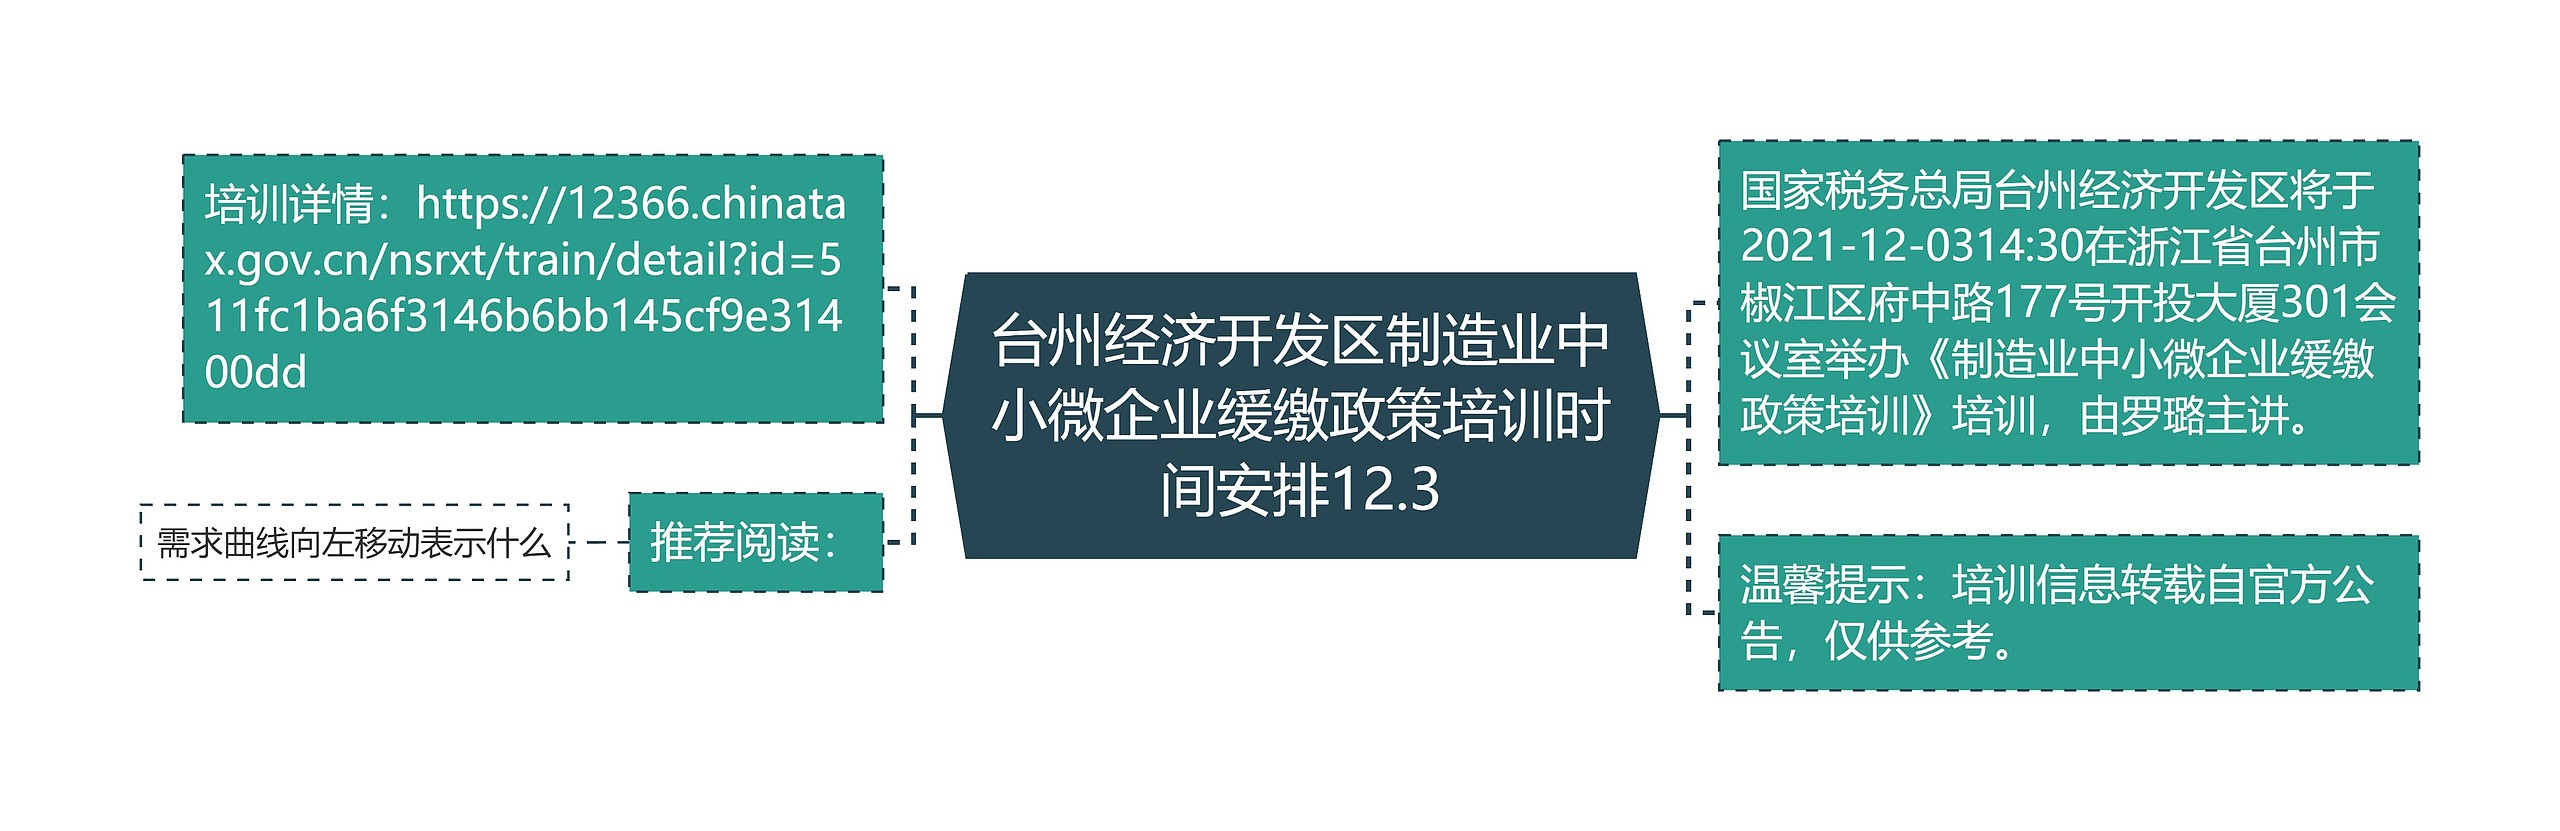 台州经济开发区制造业中小微企业缓缴政策培训时间安排12.3